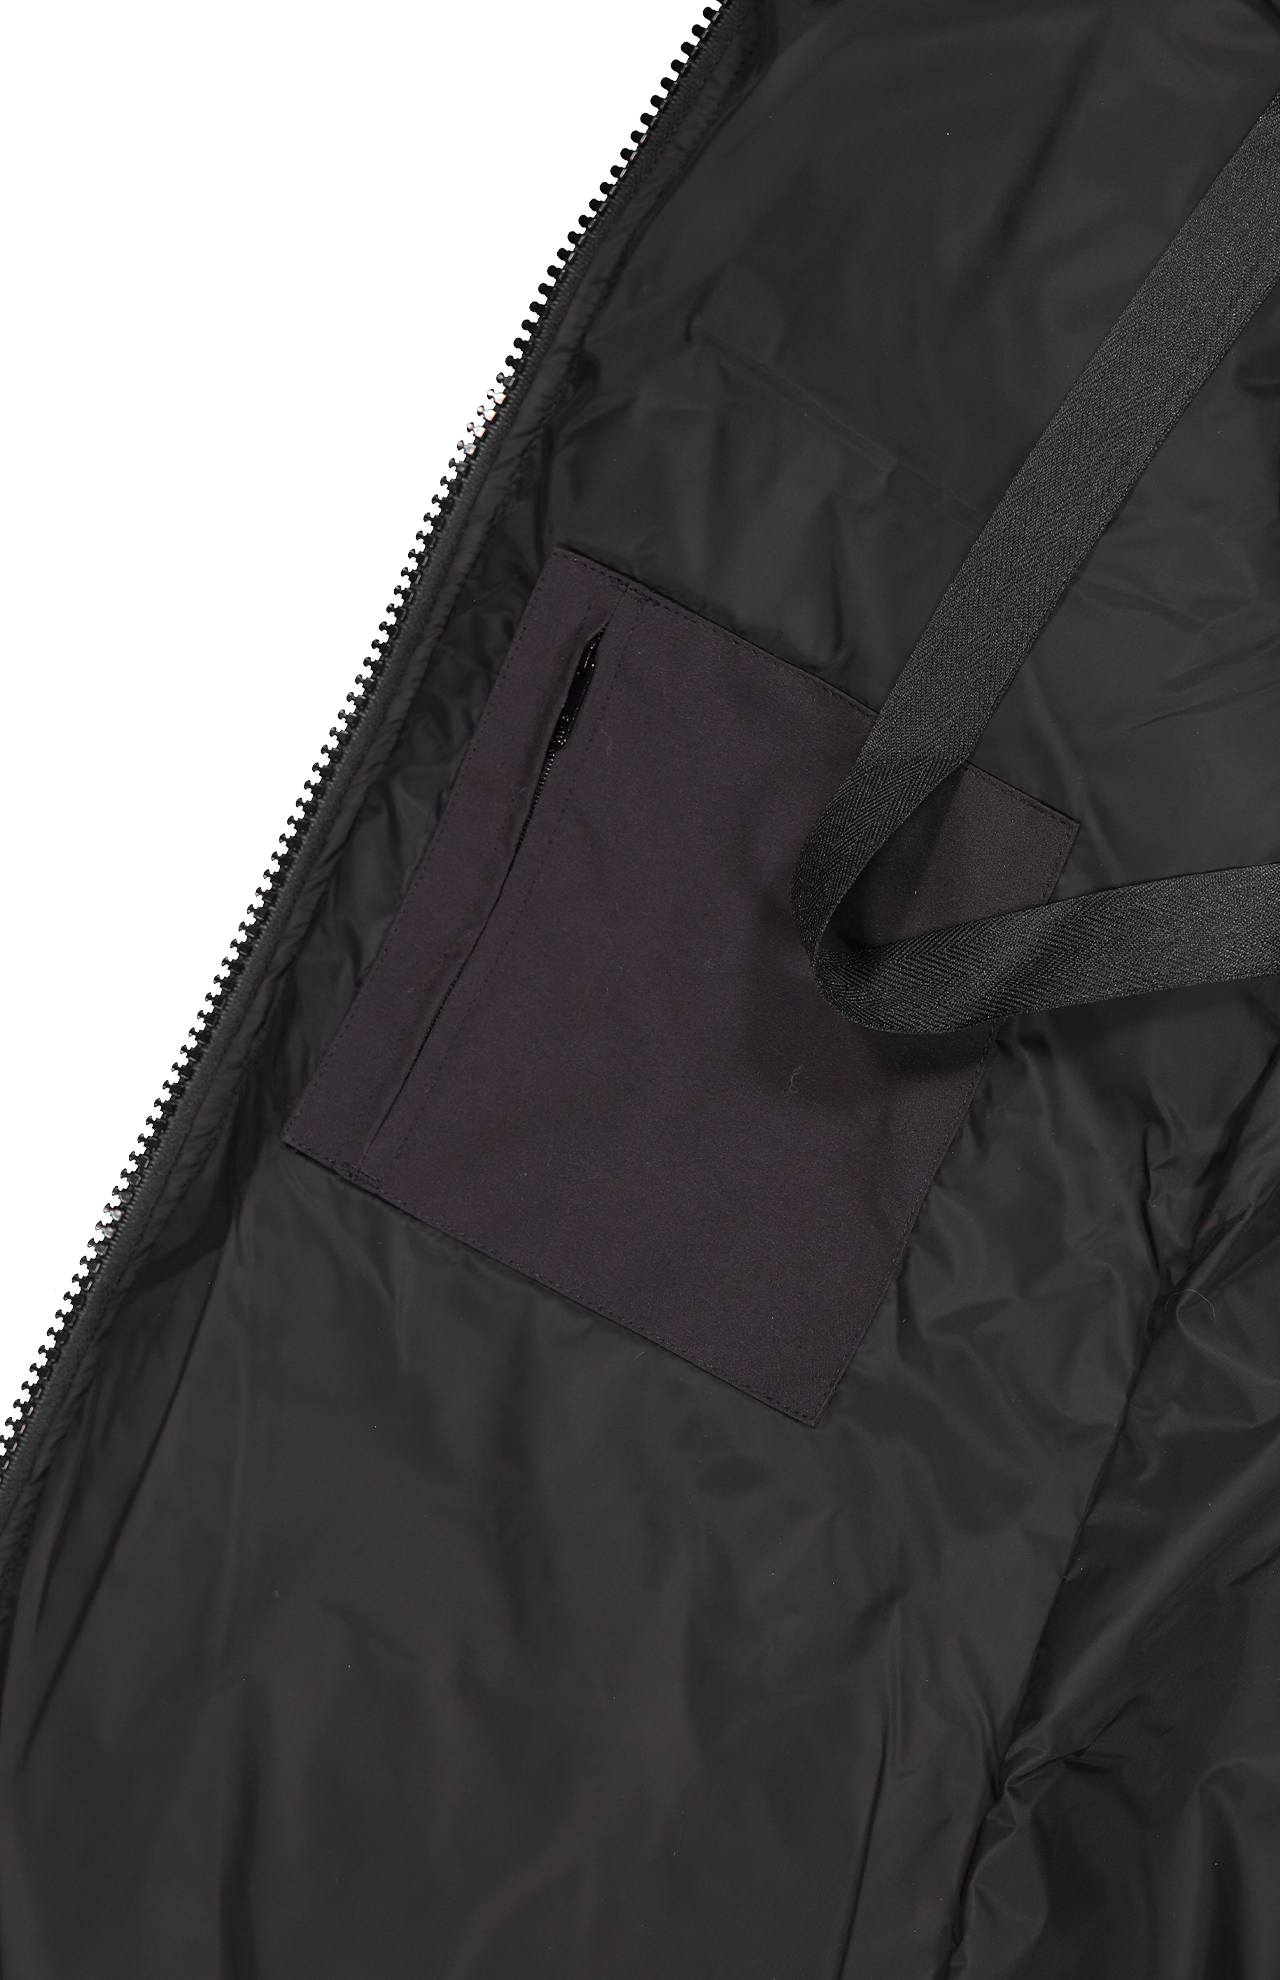 Canada Goose Mystique Parka in Black - Inside Pocket Detail Image (6955446141043)